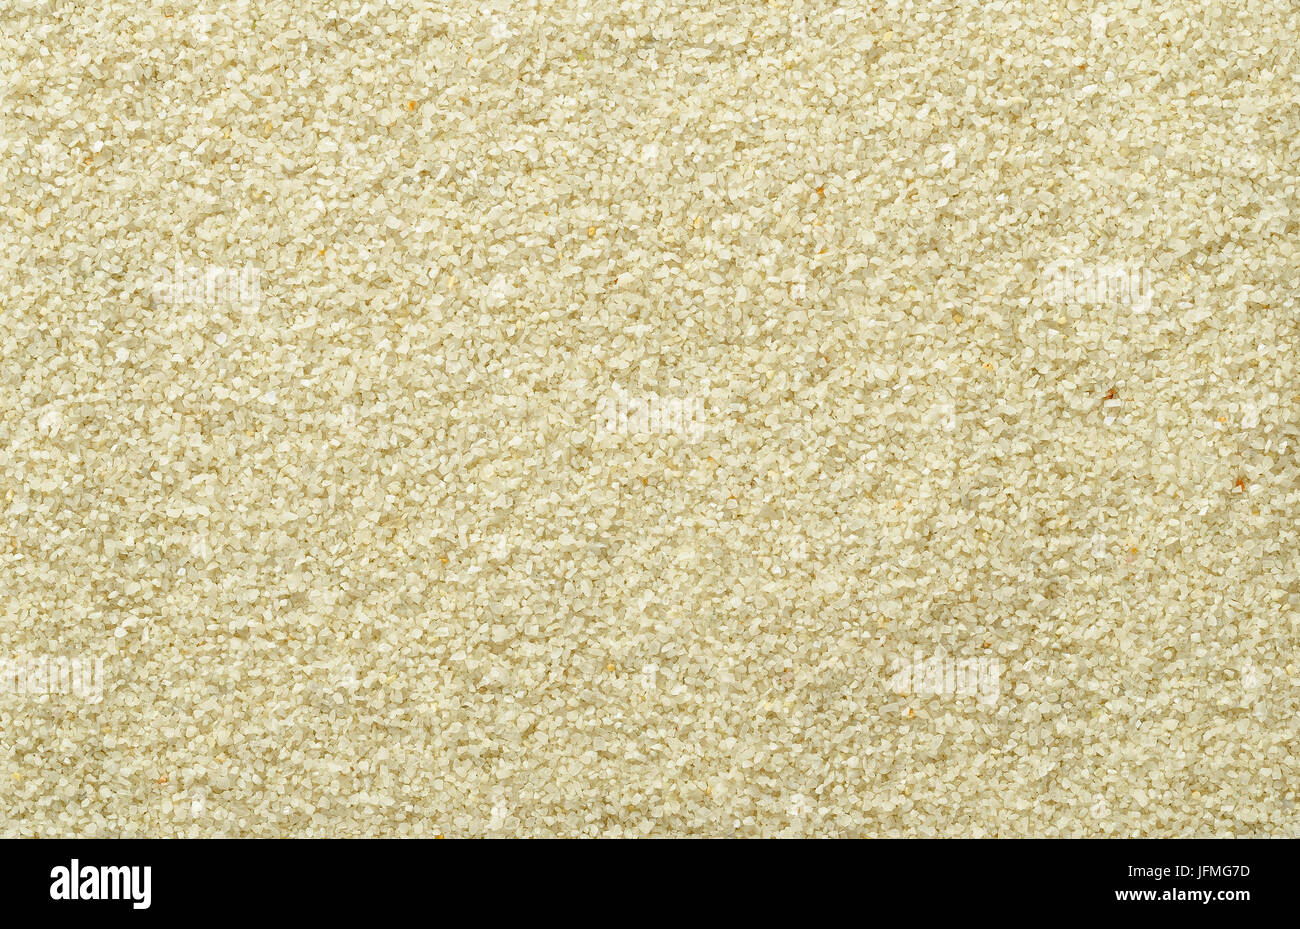 Surface lisse et même du sable. De couleur ocre brun clair et grains de sable. Arrière-plans. Closeup macro photo directement à partir de ci-dessus. Banque D'Images